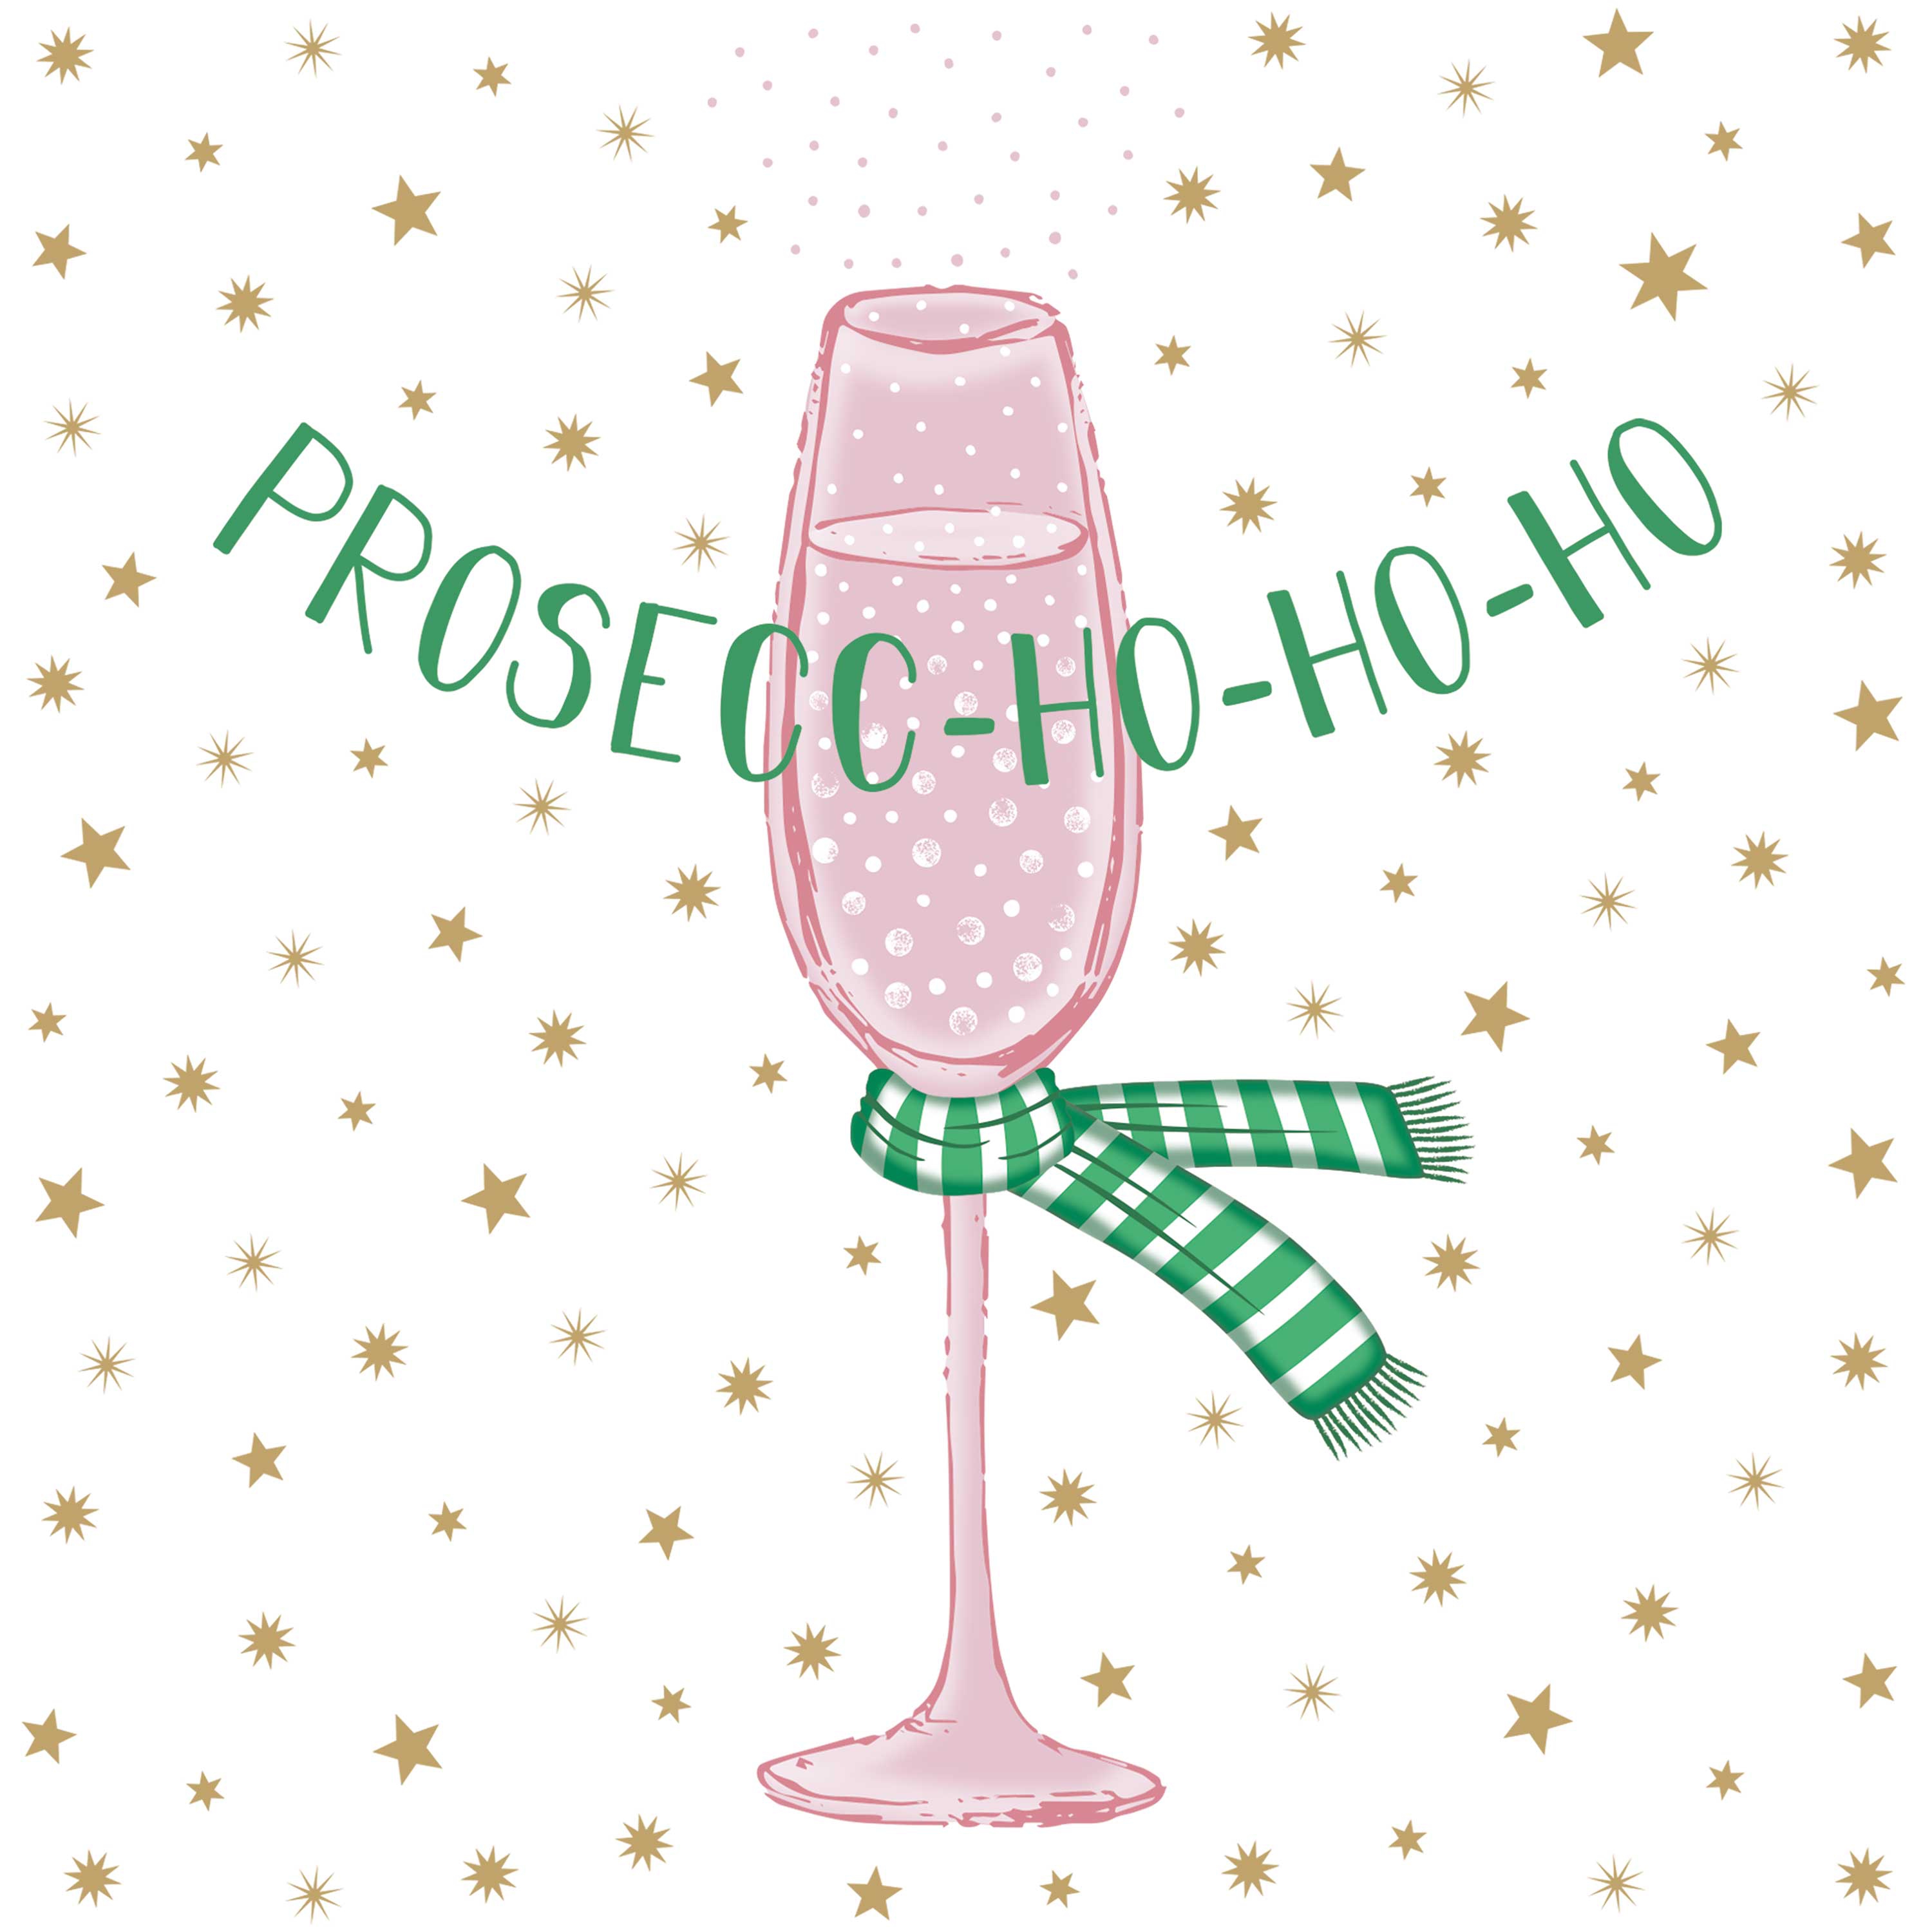 20 Servietten "Prosecc-Ho-Ho-Ho"